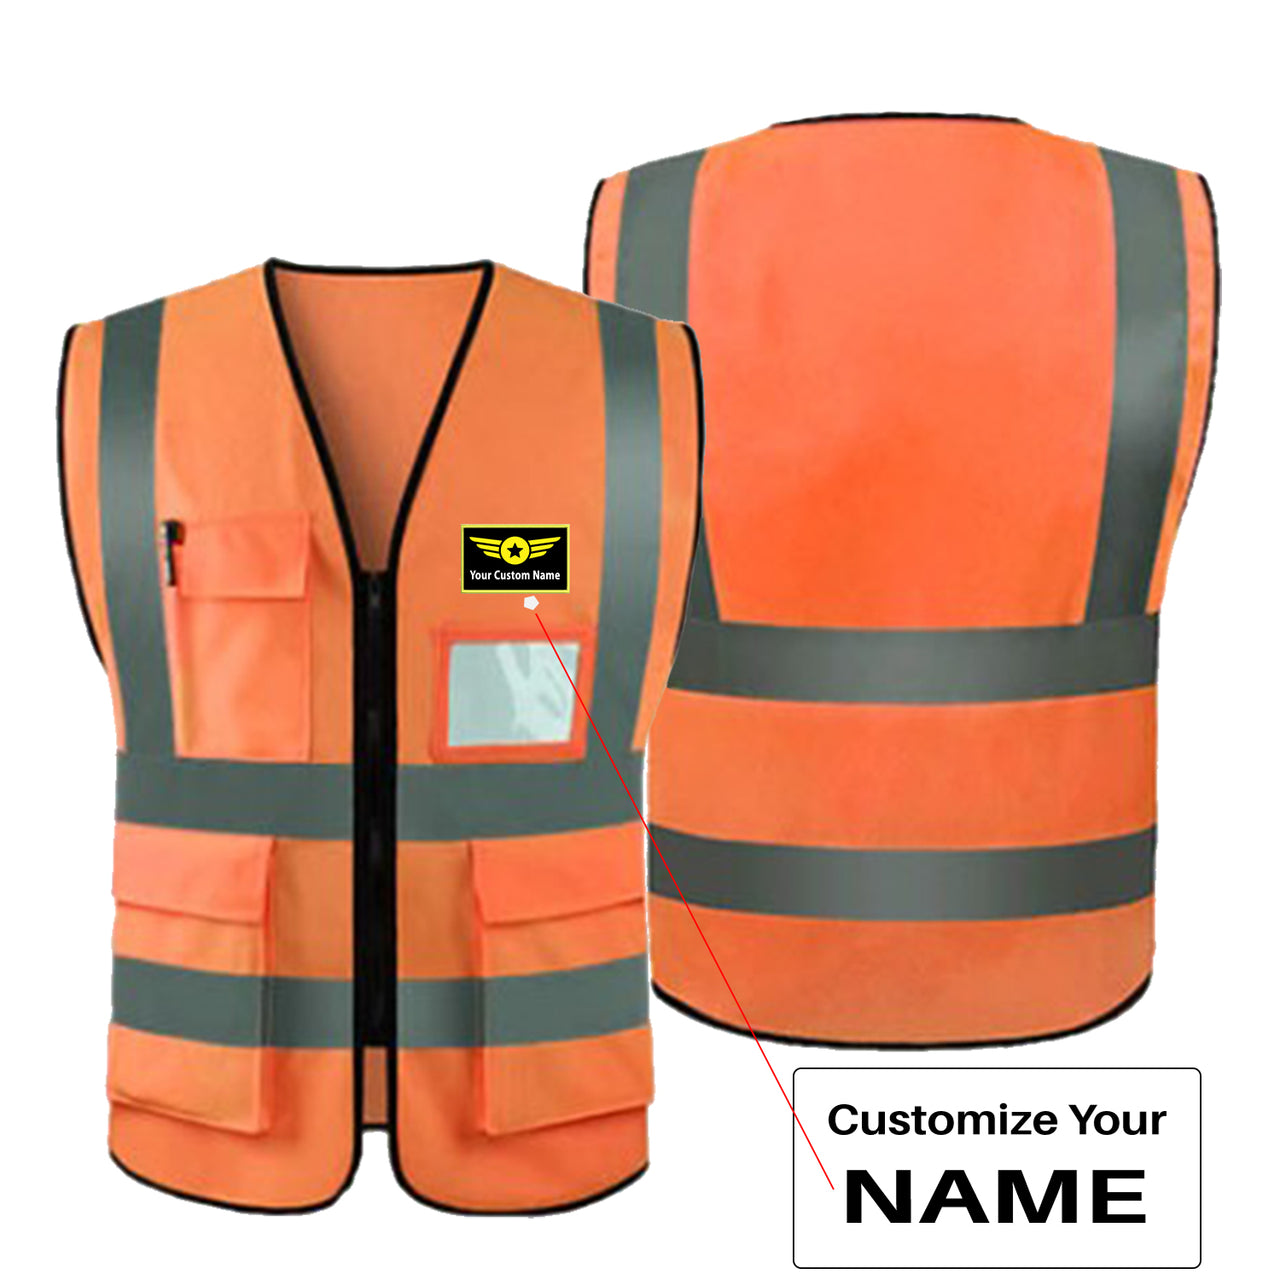 Custom Name (Special Badge) Designed Reflective Vests